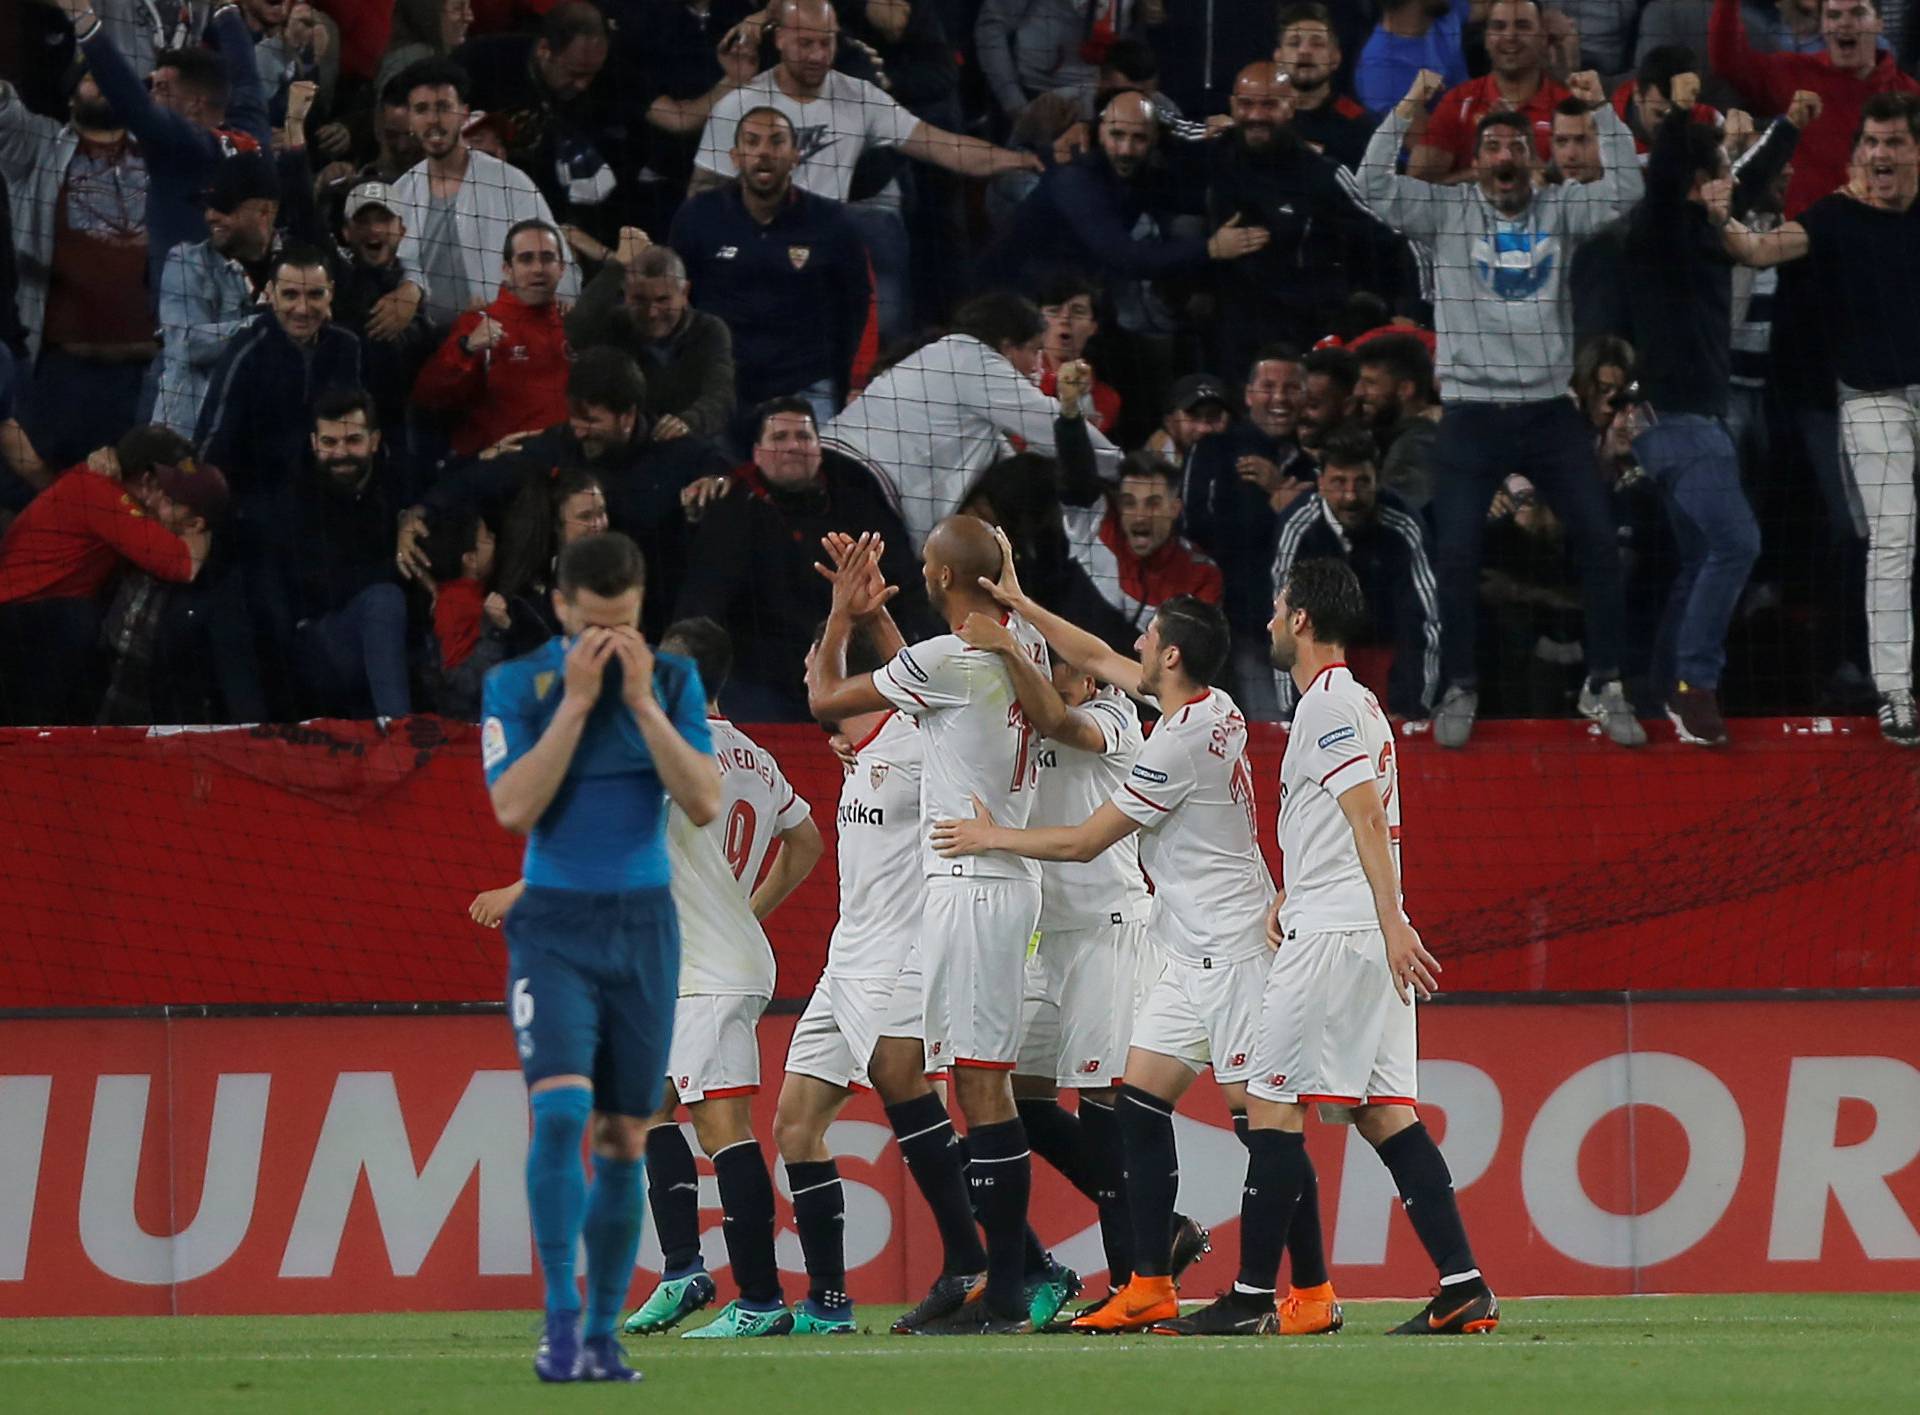 La Liga Santander - Sevilla vs Real Madrid